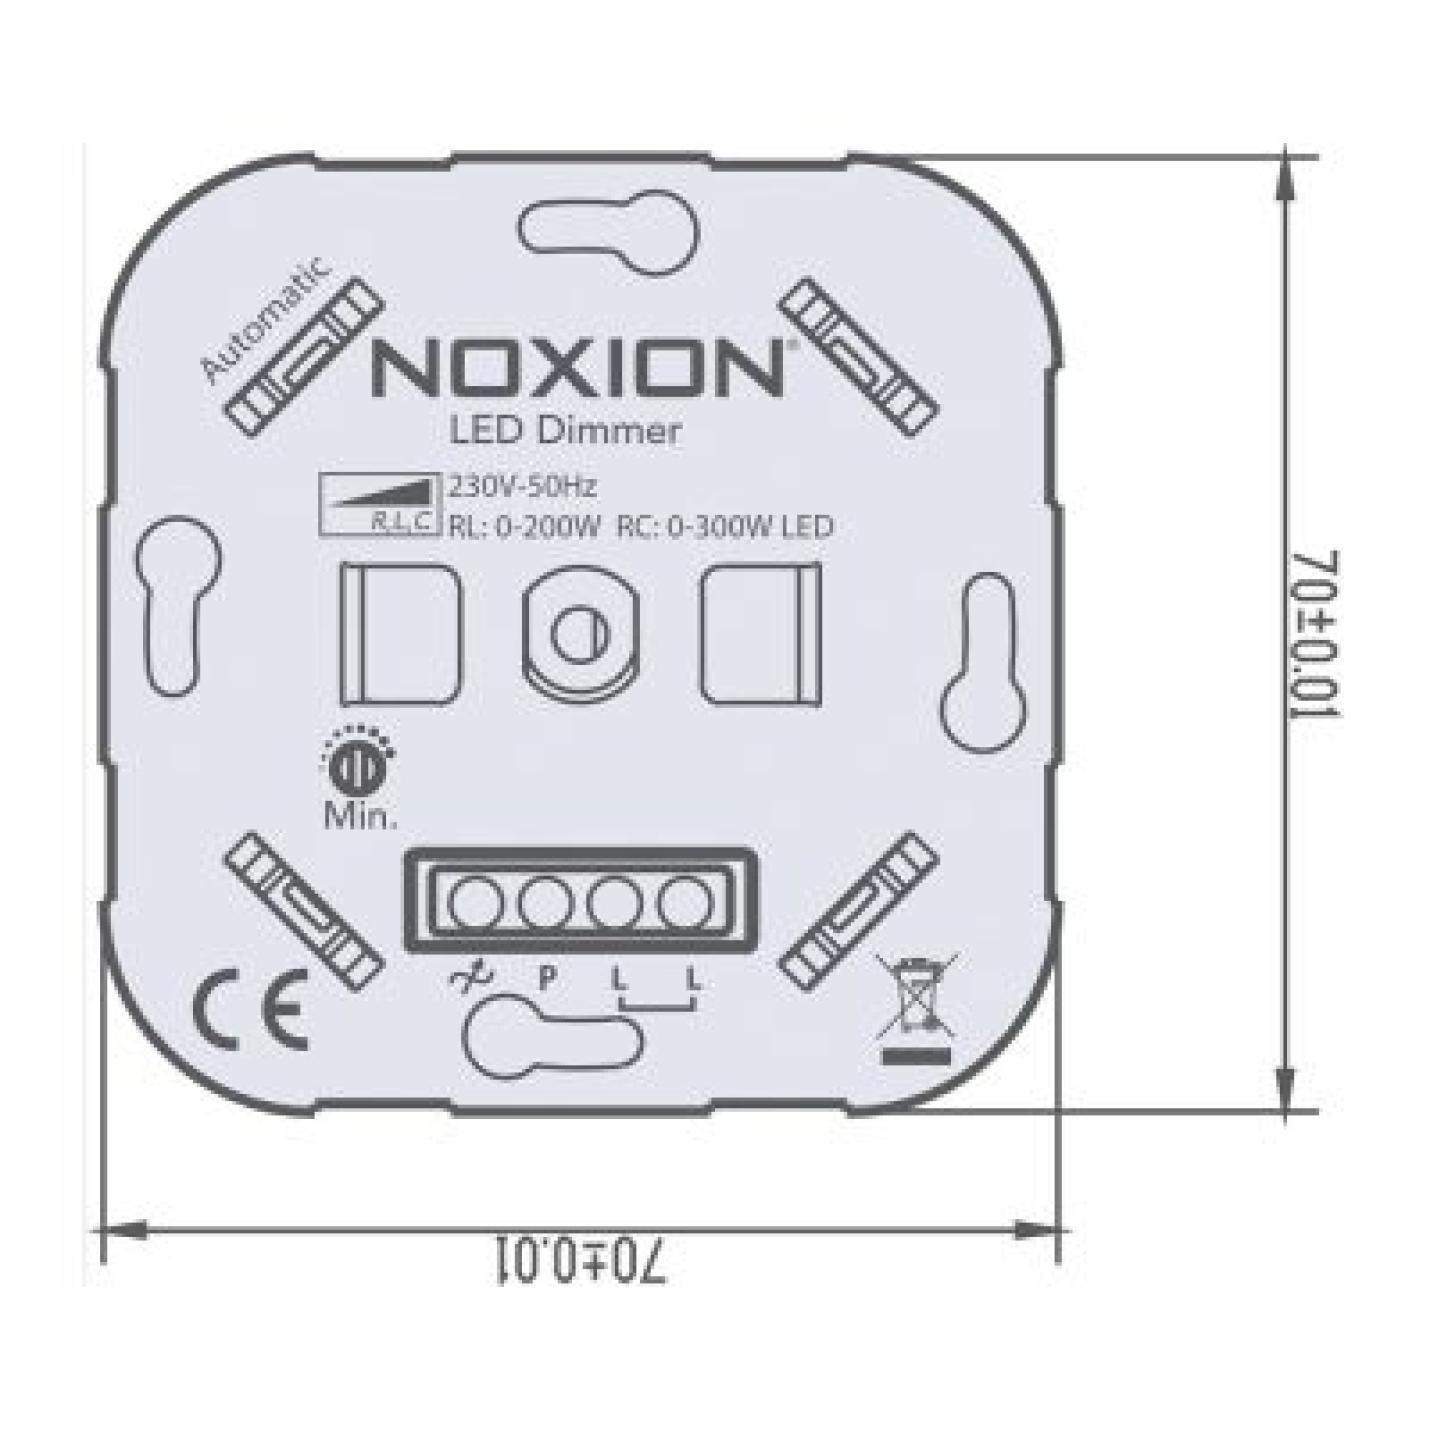 Noxion Automatische LED Dimmer Schakelaar RLC 0-300W 220-240V met afdekplaat; Afbeelding: 5